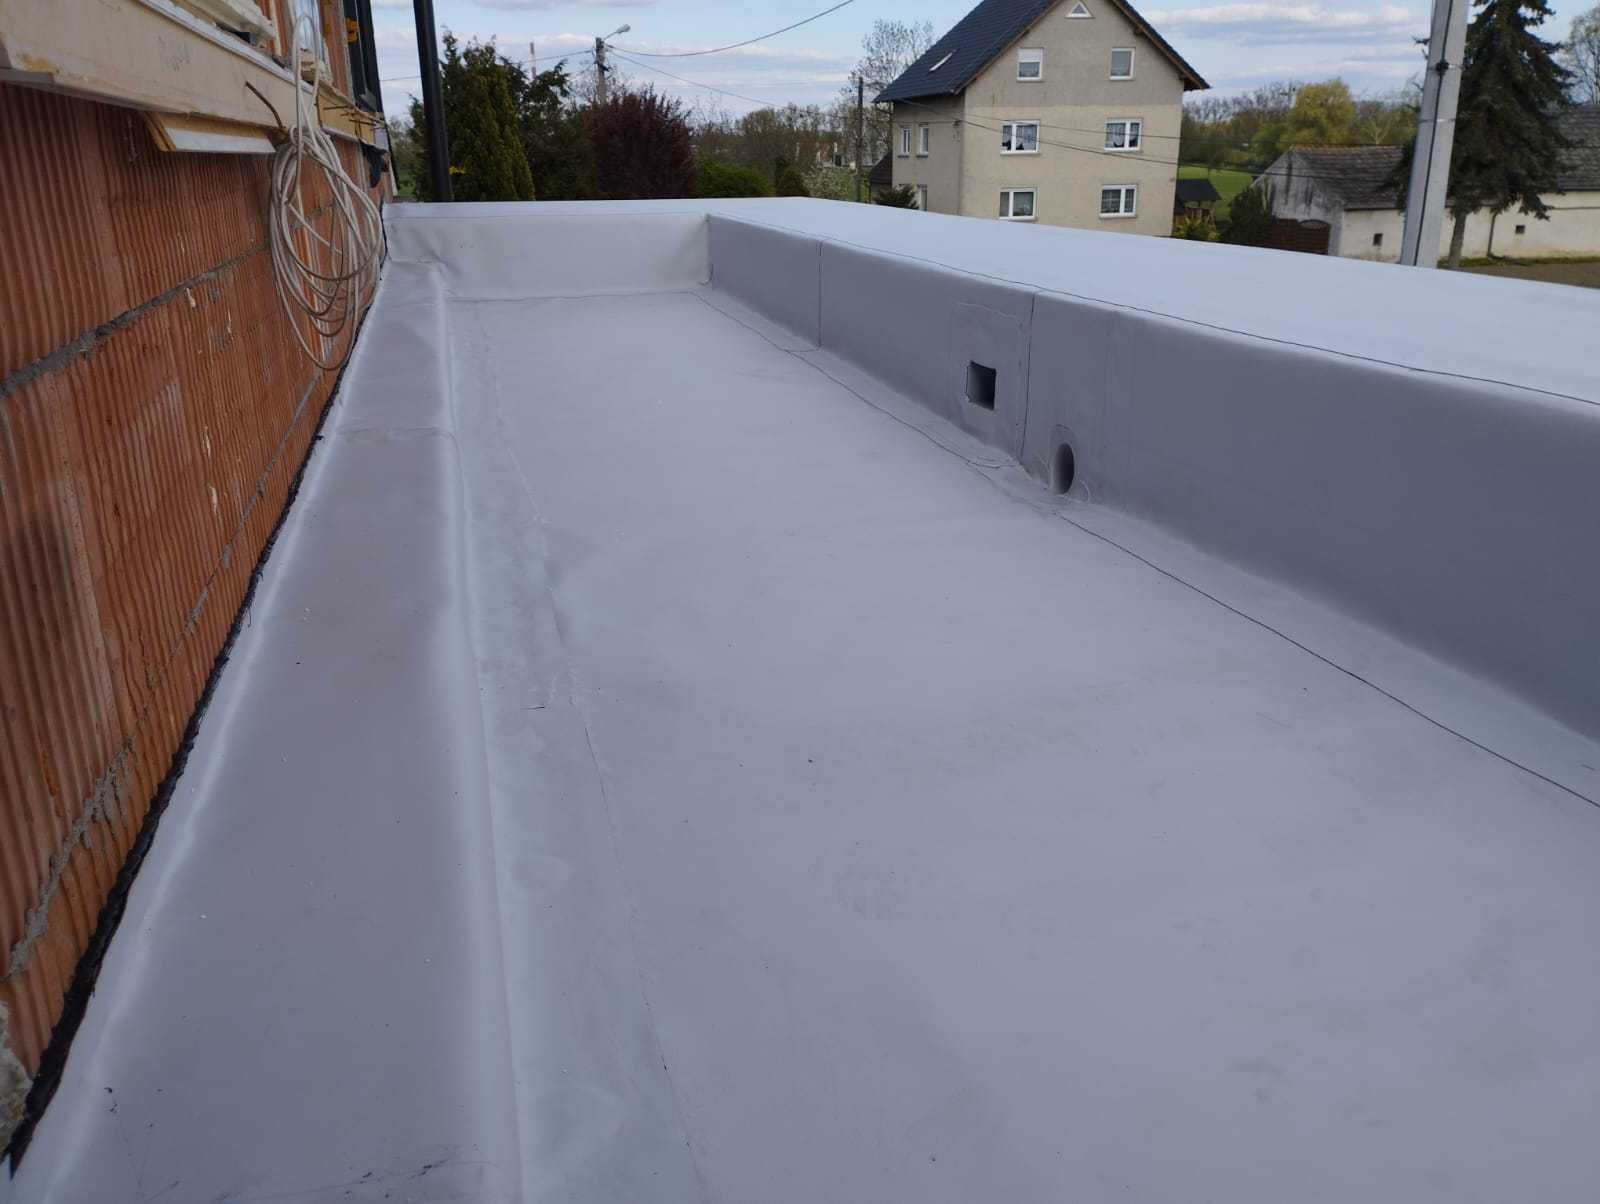 Dachy płaskie/garaże/balkony/tarasy/ w systemie membrany pvc i papy